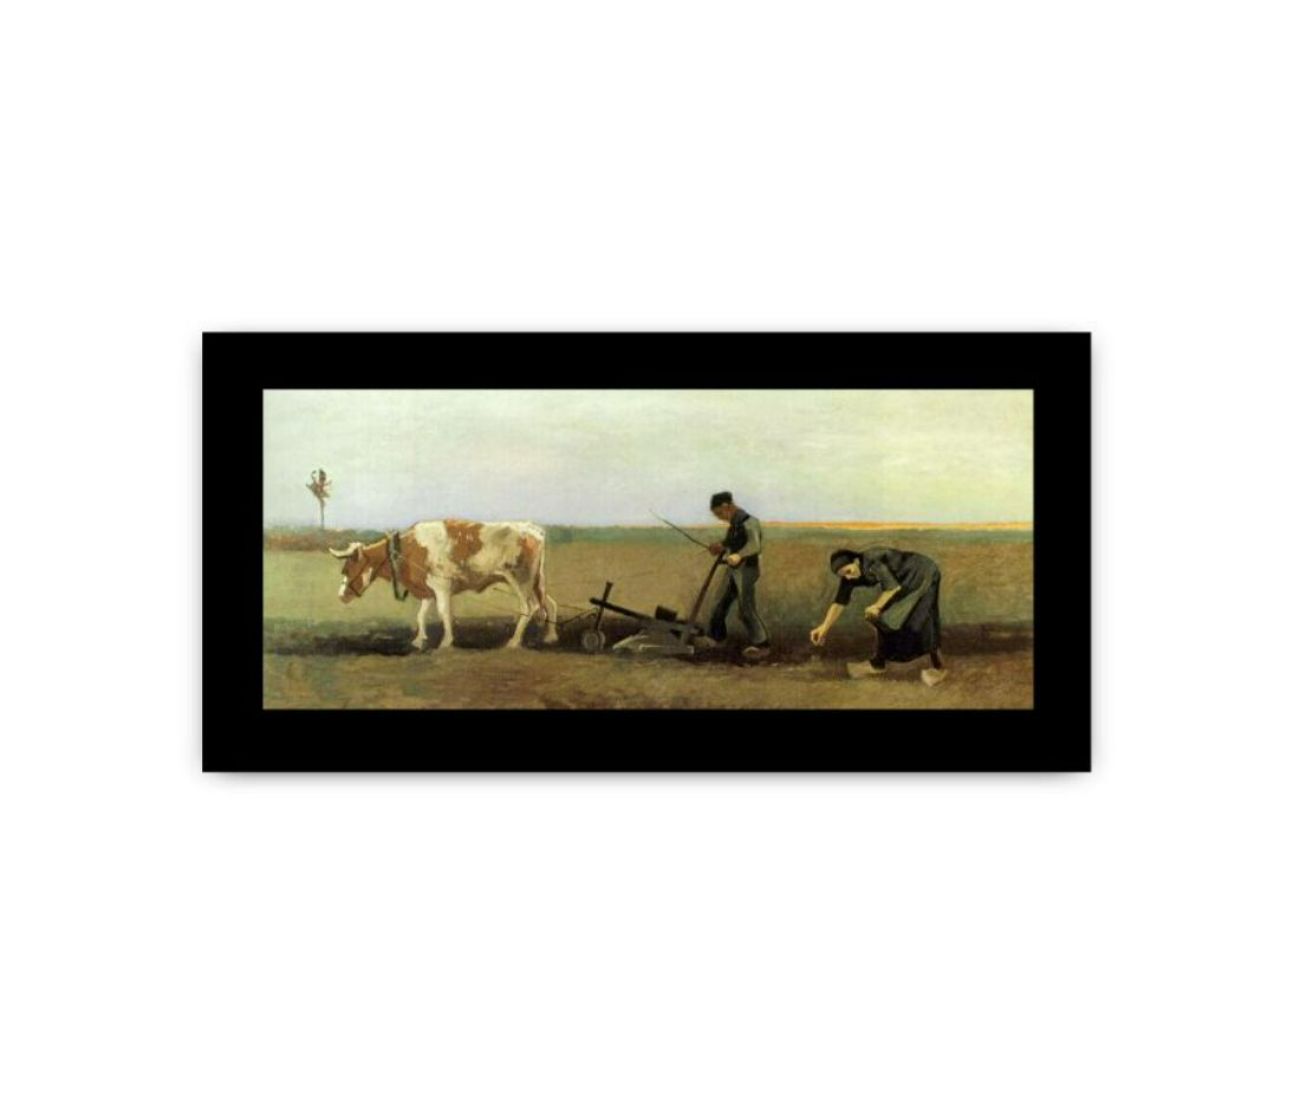 Plow In Field Painting by Van Gogh Framed Print